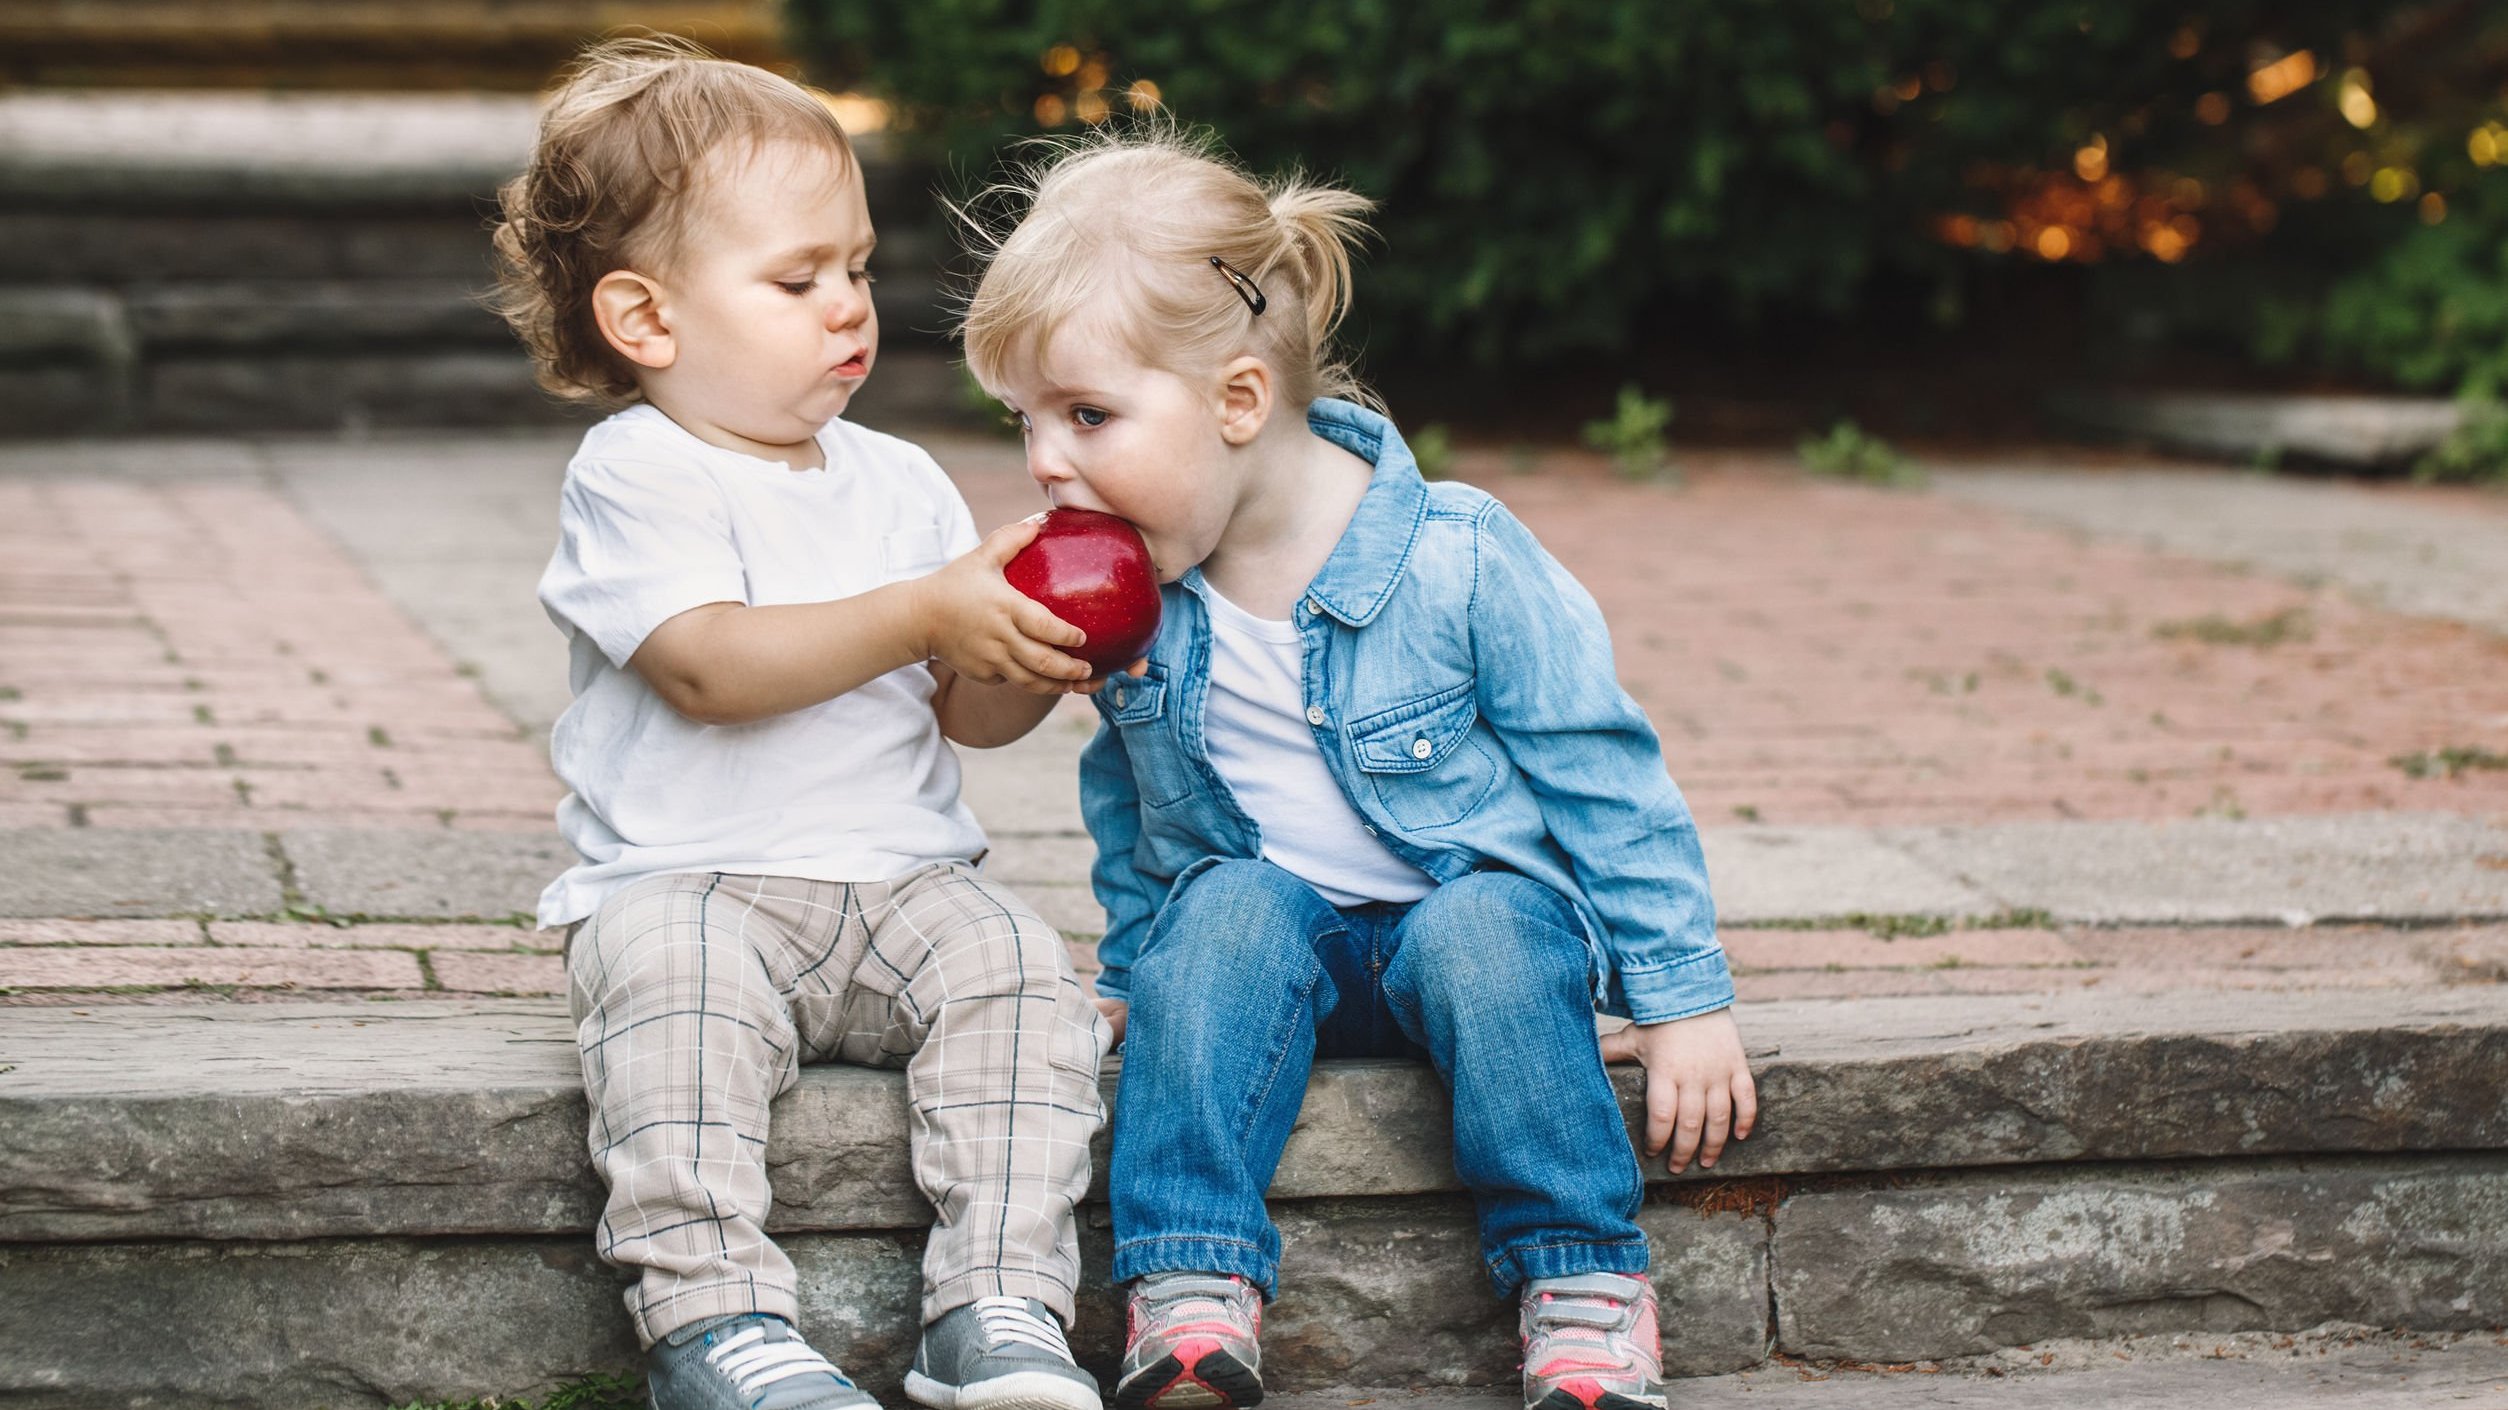 Menino e menina pequenos, sentados em uma sarjeta. O menino segura uma maçã, e a menina dá uma mordida nela.